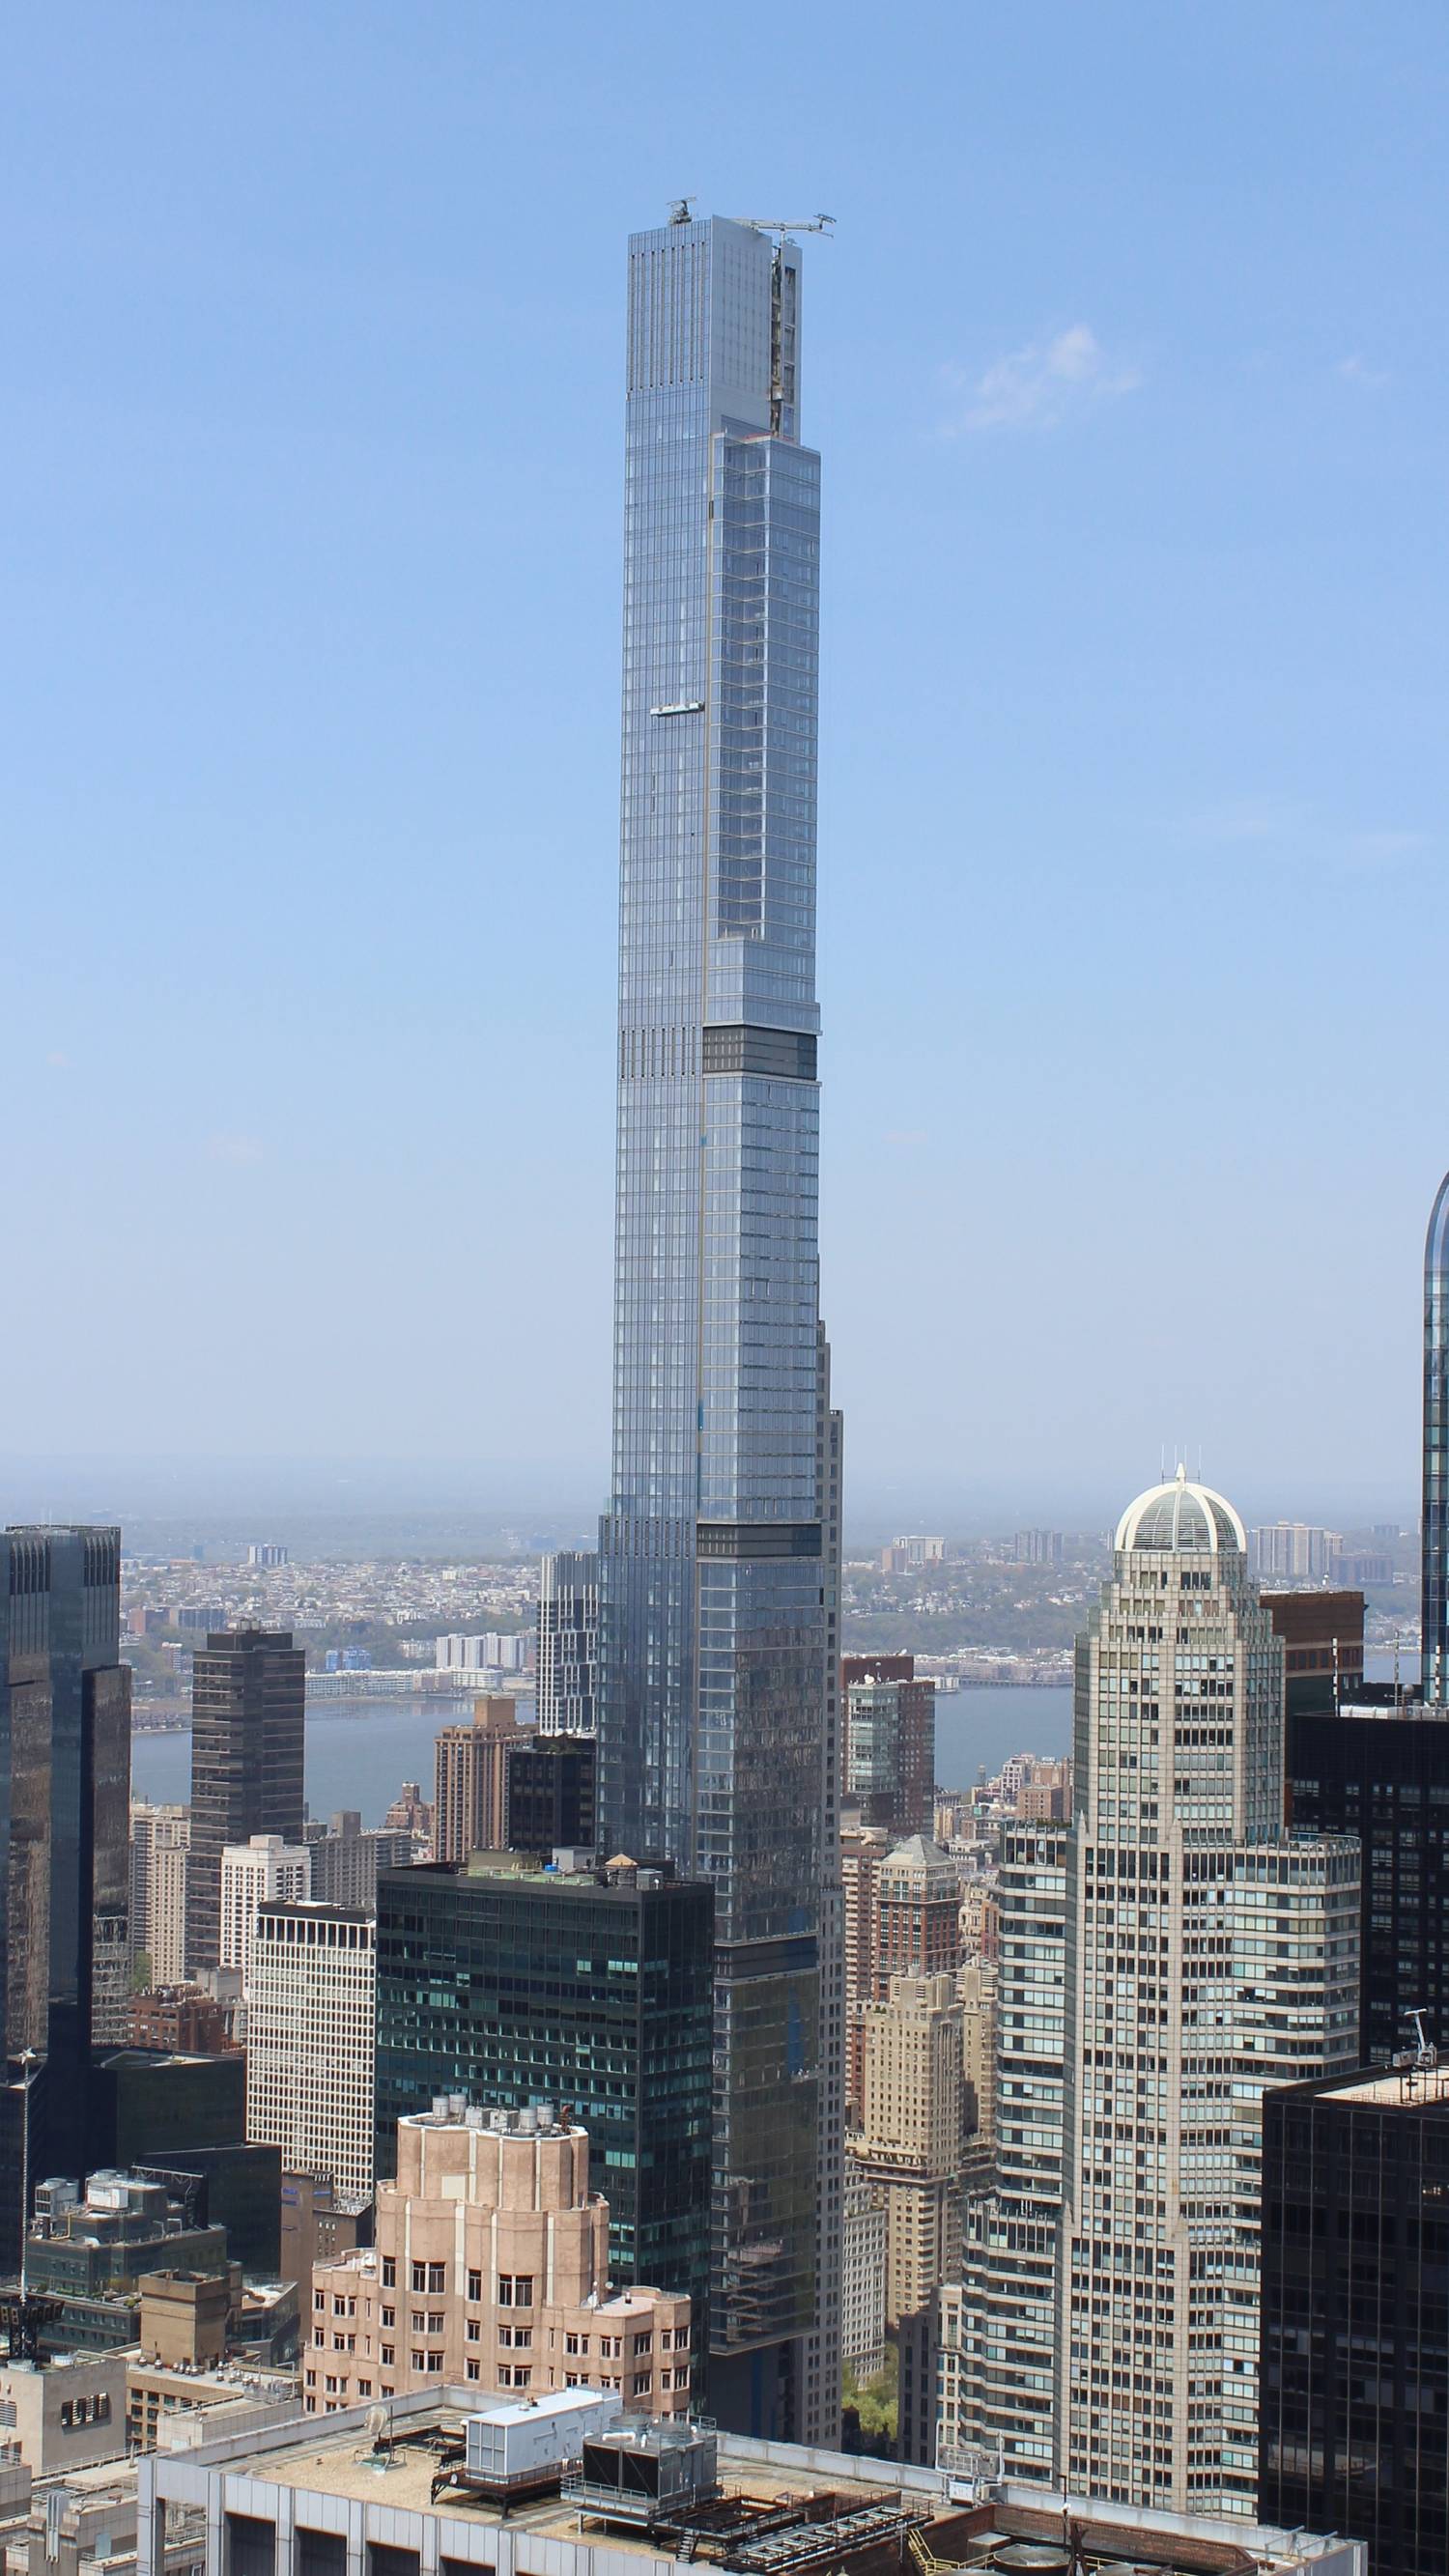 A világ legmagasabb lakóépülete a Central Park Tower, ami 472 méter magas, és 98 emeletes, igaz a legmagasabb emelet a 136 számot kapta.